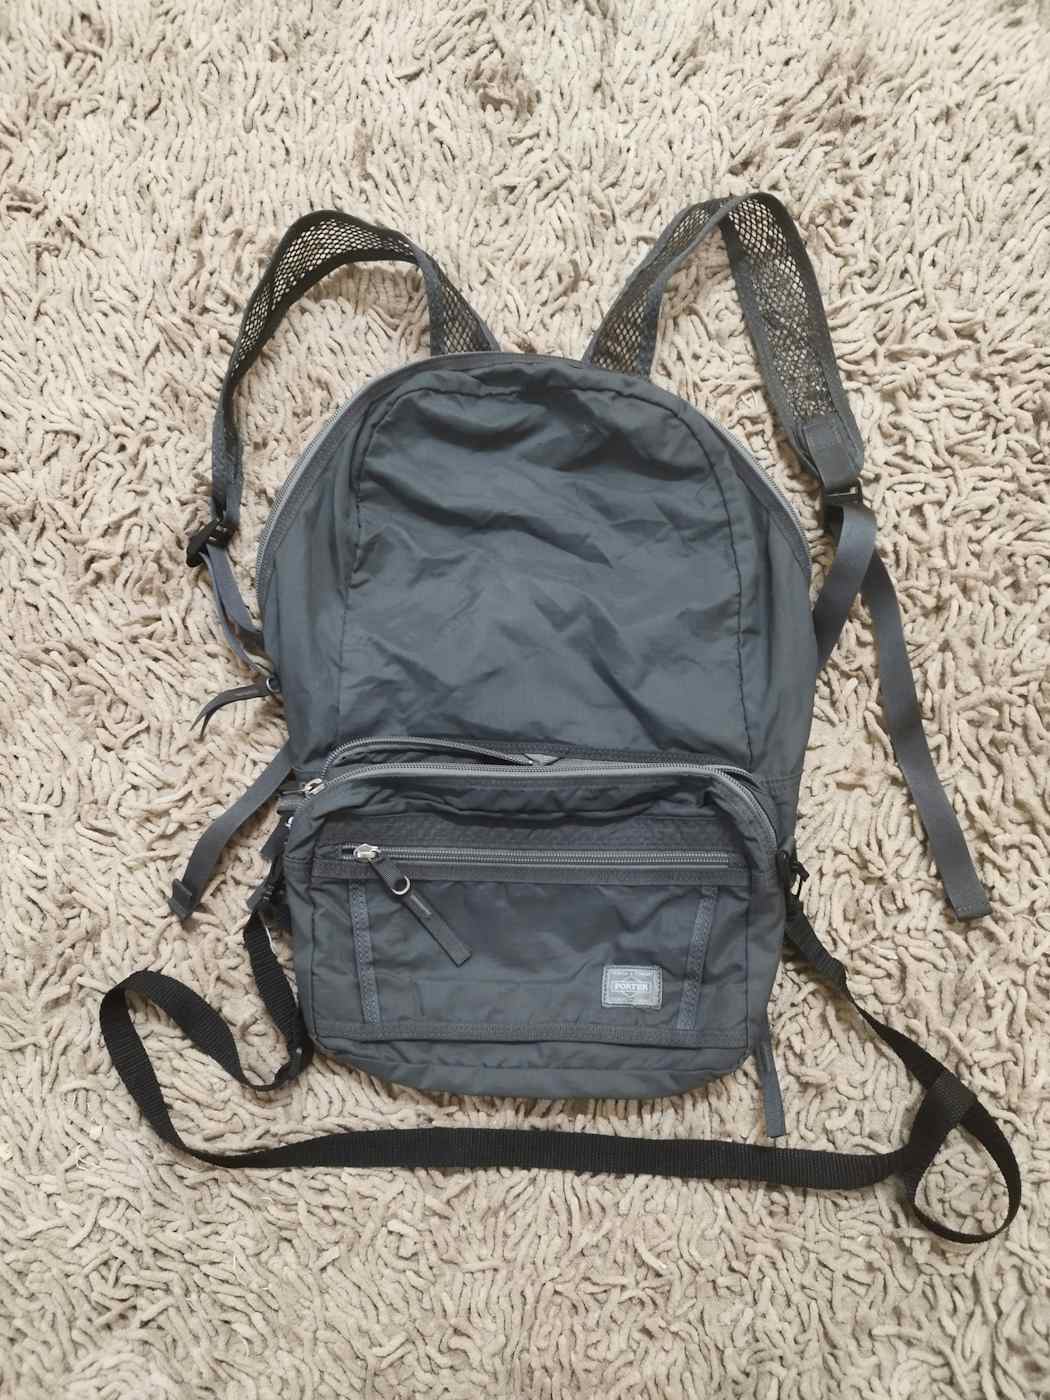 Porter 2 in 1 sling bag / backpack - 1